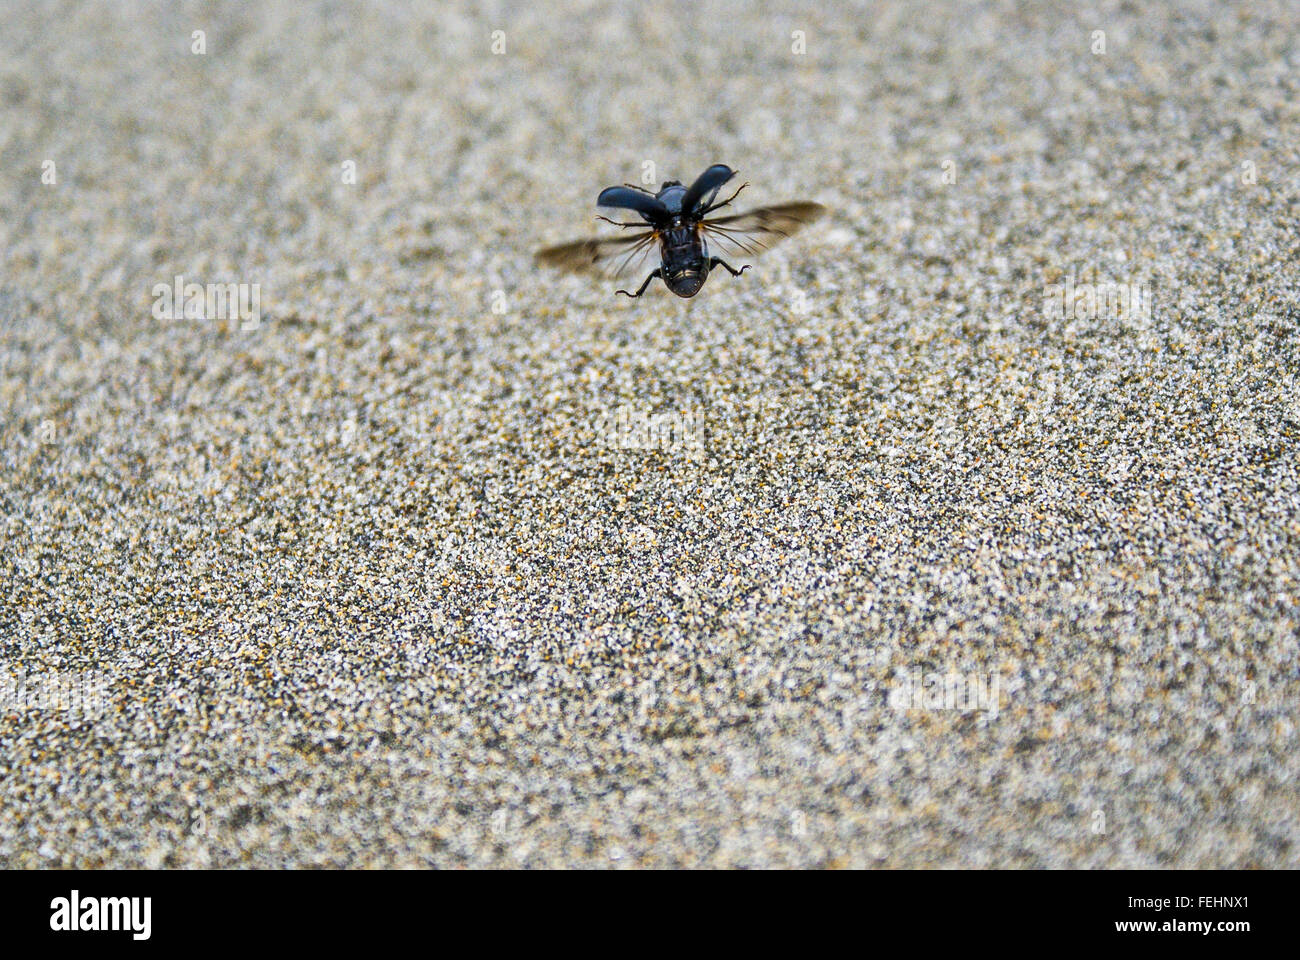 Un scarabée noir prend son envol au-dessus du sable. Banque D'Images